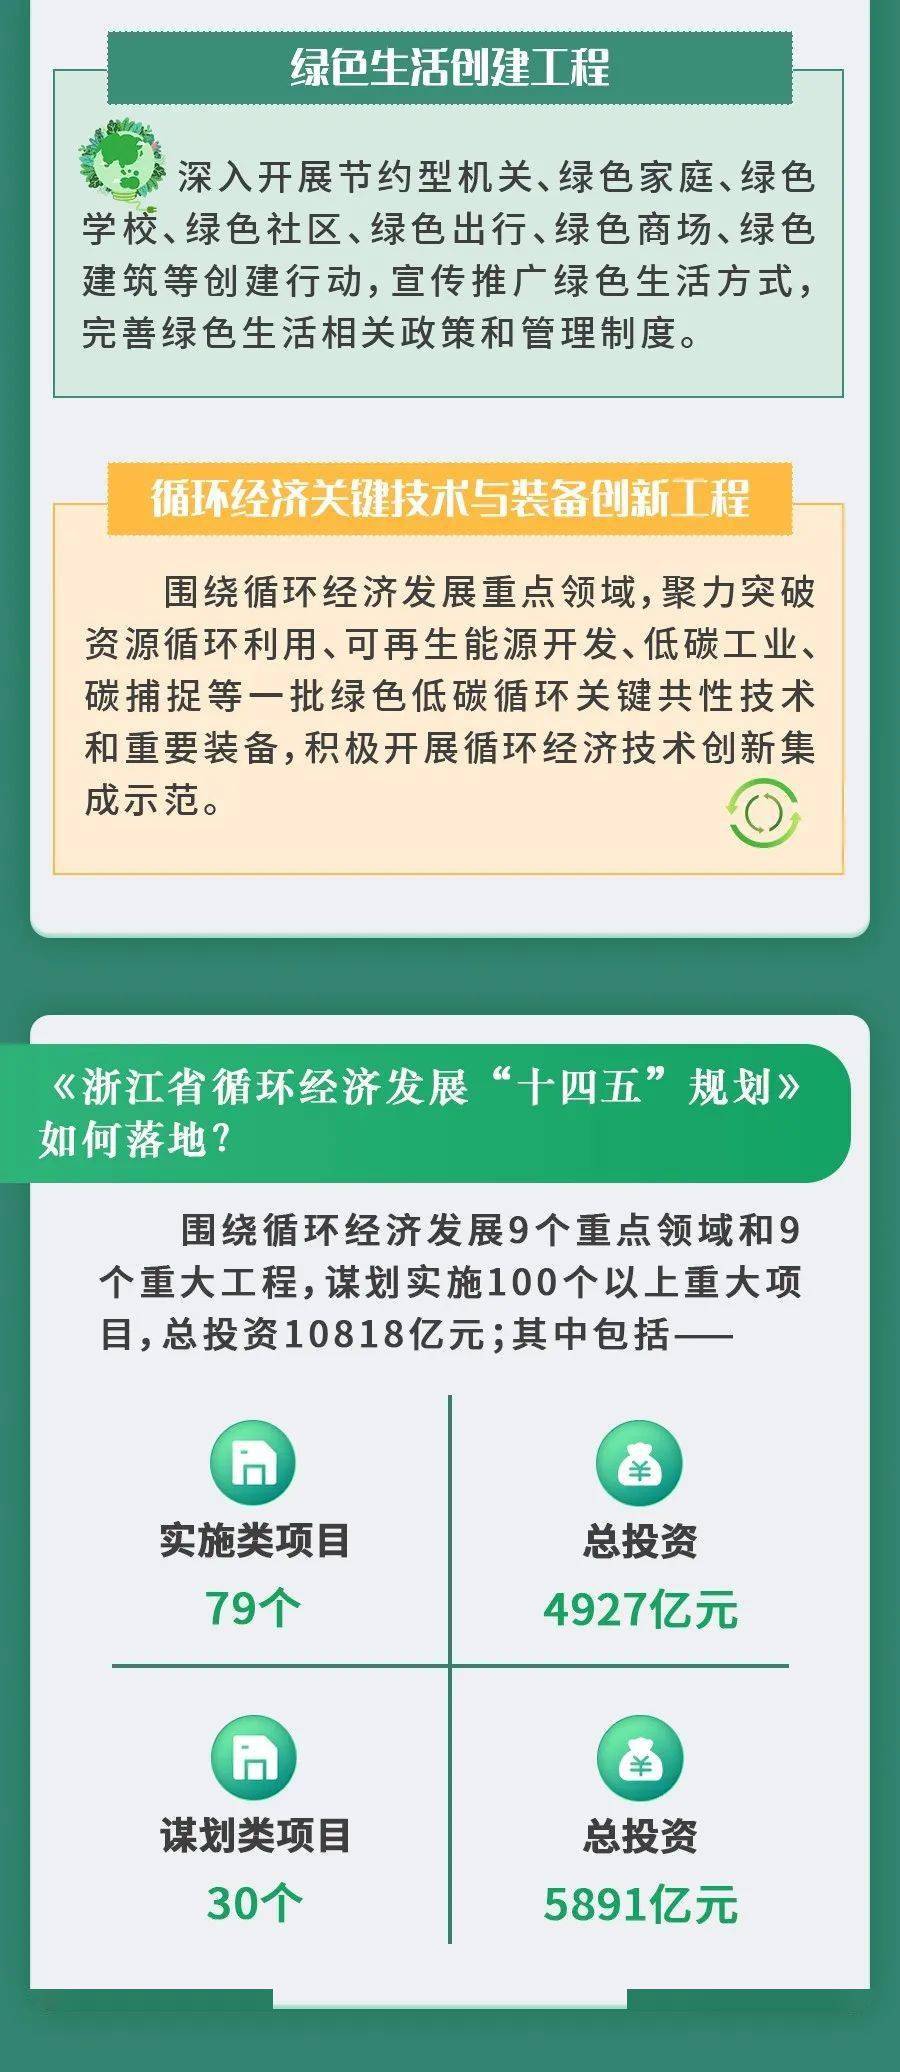 浙江省循环经济发展十四五规划解读来了